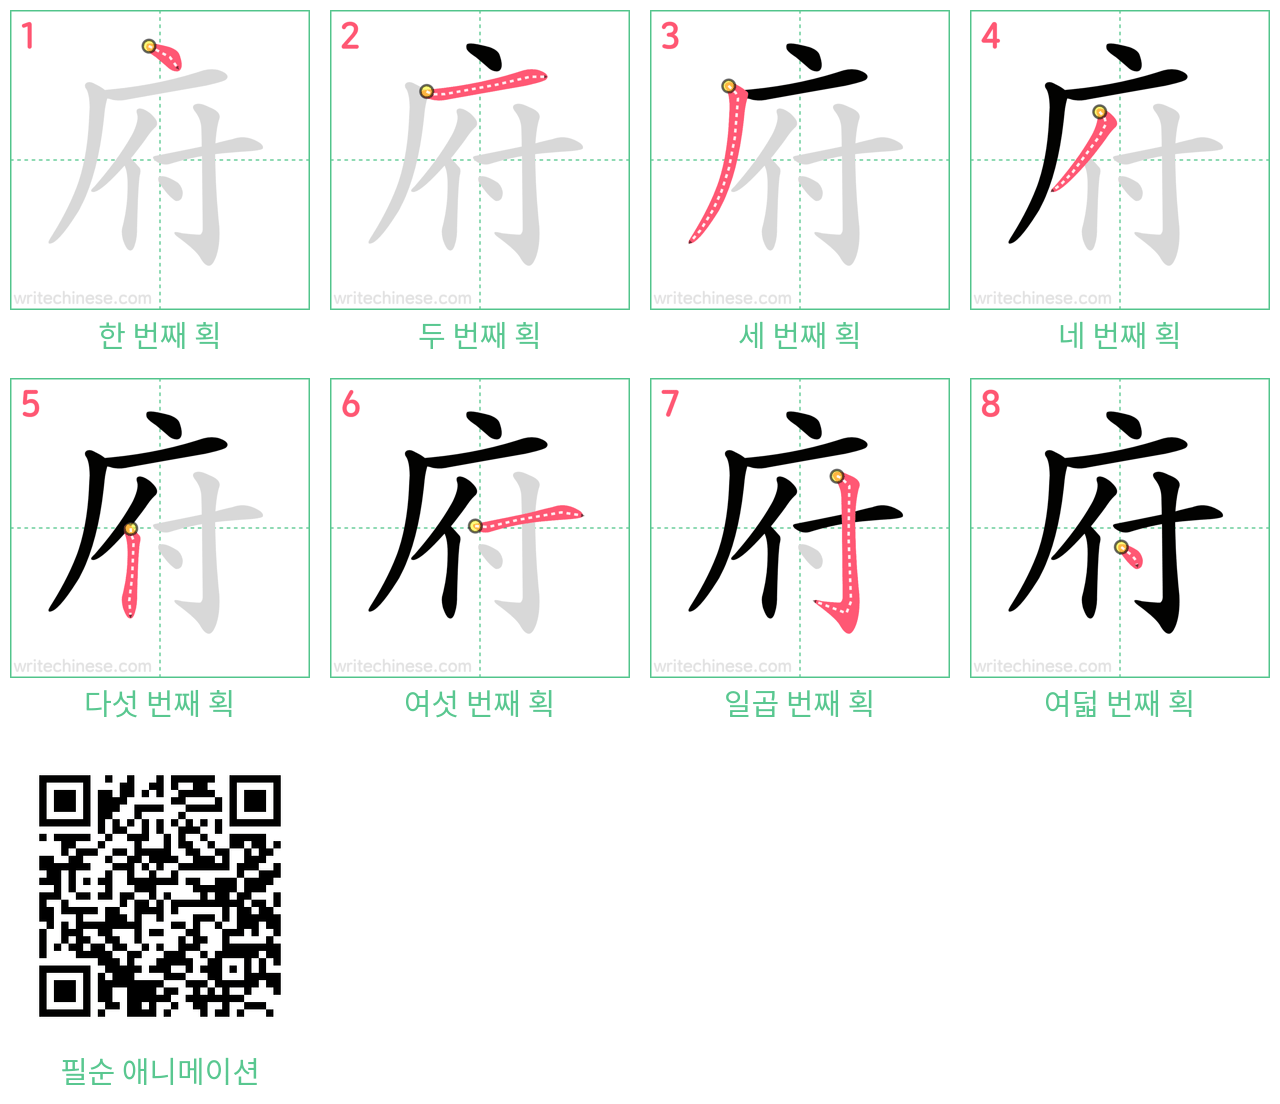 府 step-by-step stroke order diagrams